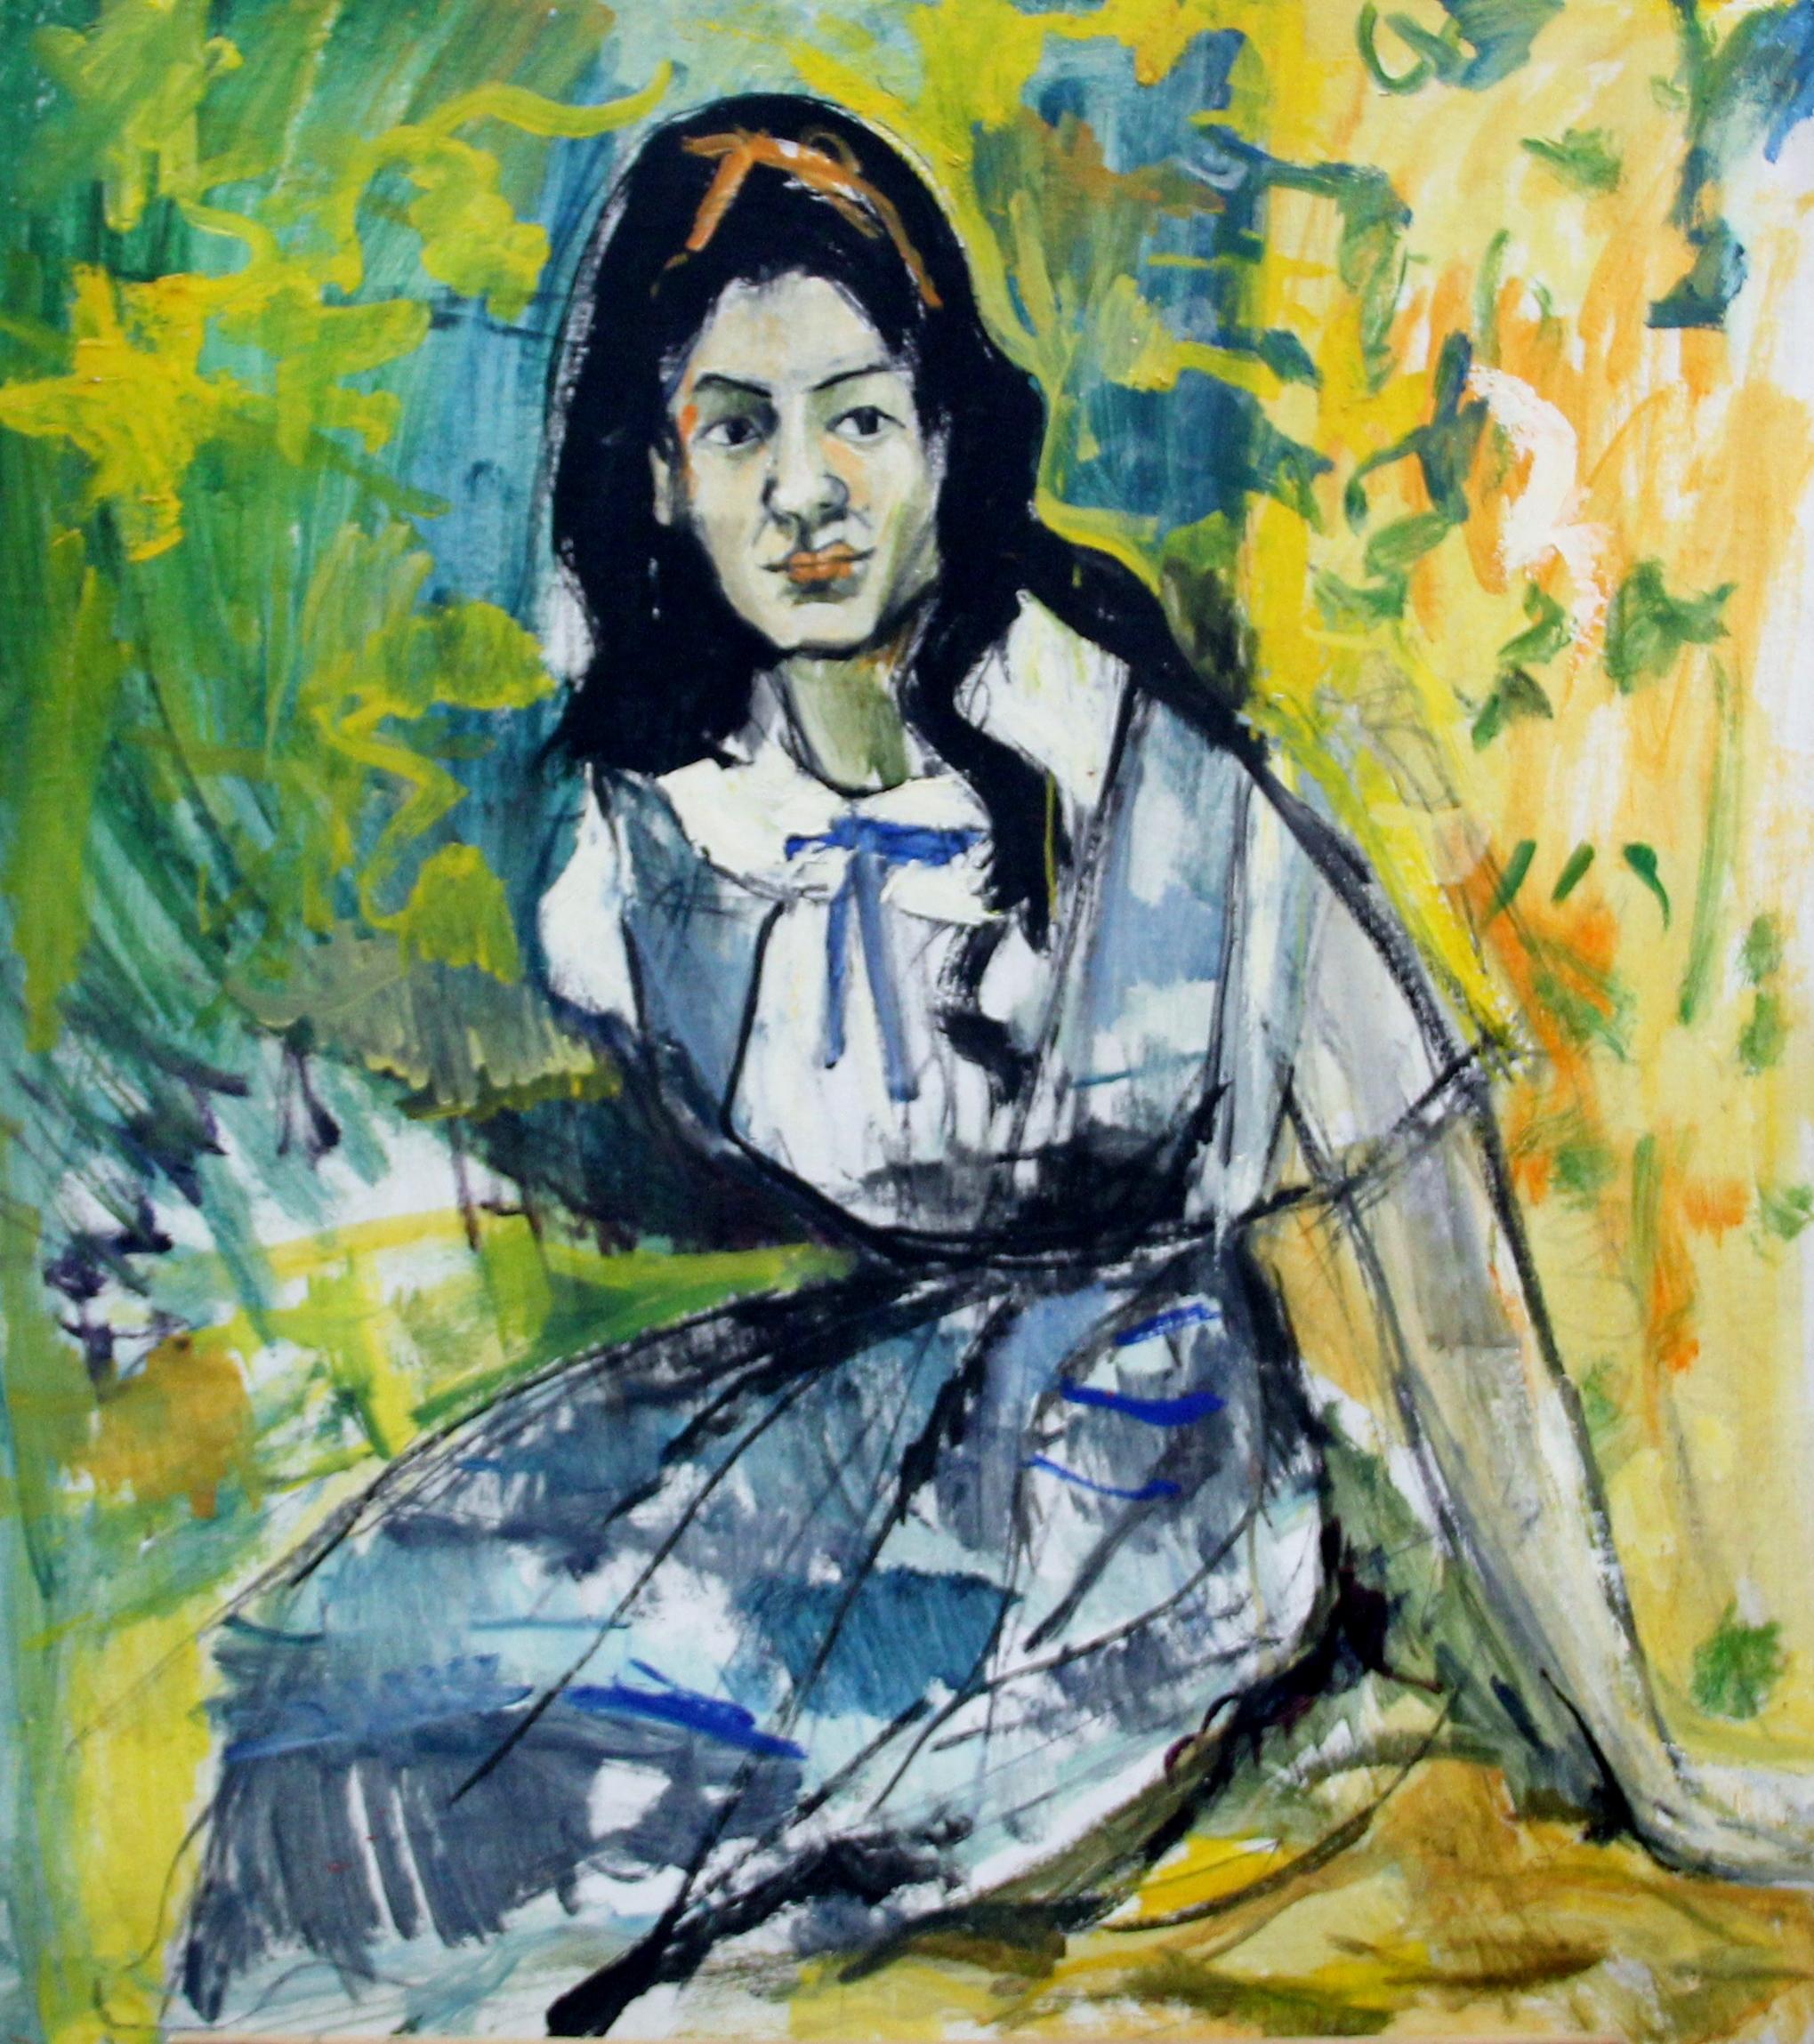 Mädchen mit Schleife im Haar, expressionistisches Porträt des Künstlers aus Philadelphia